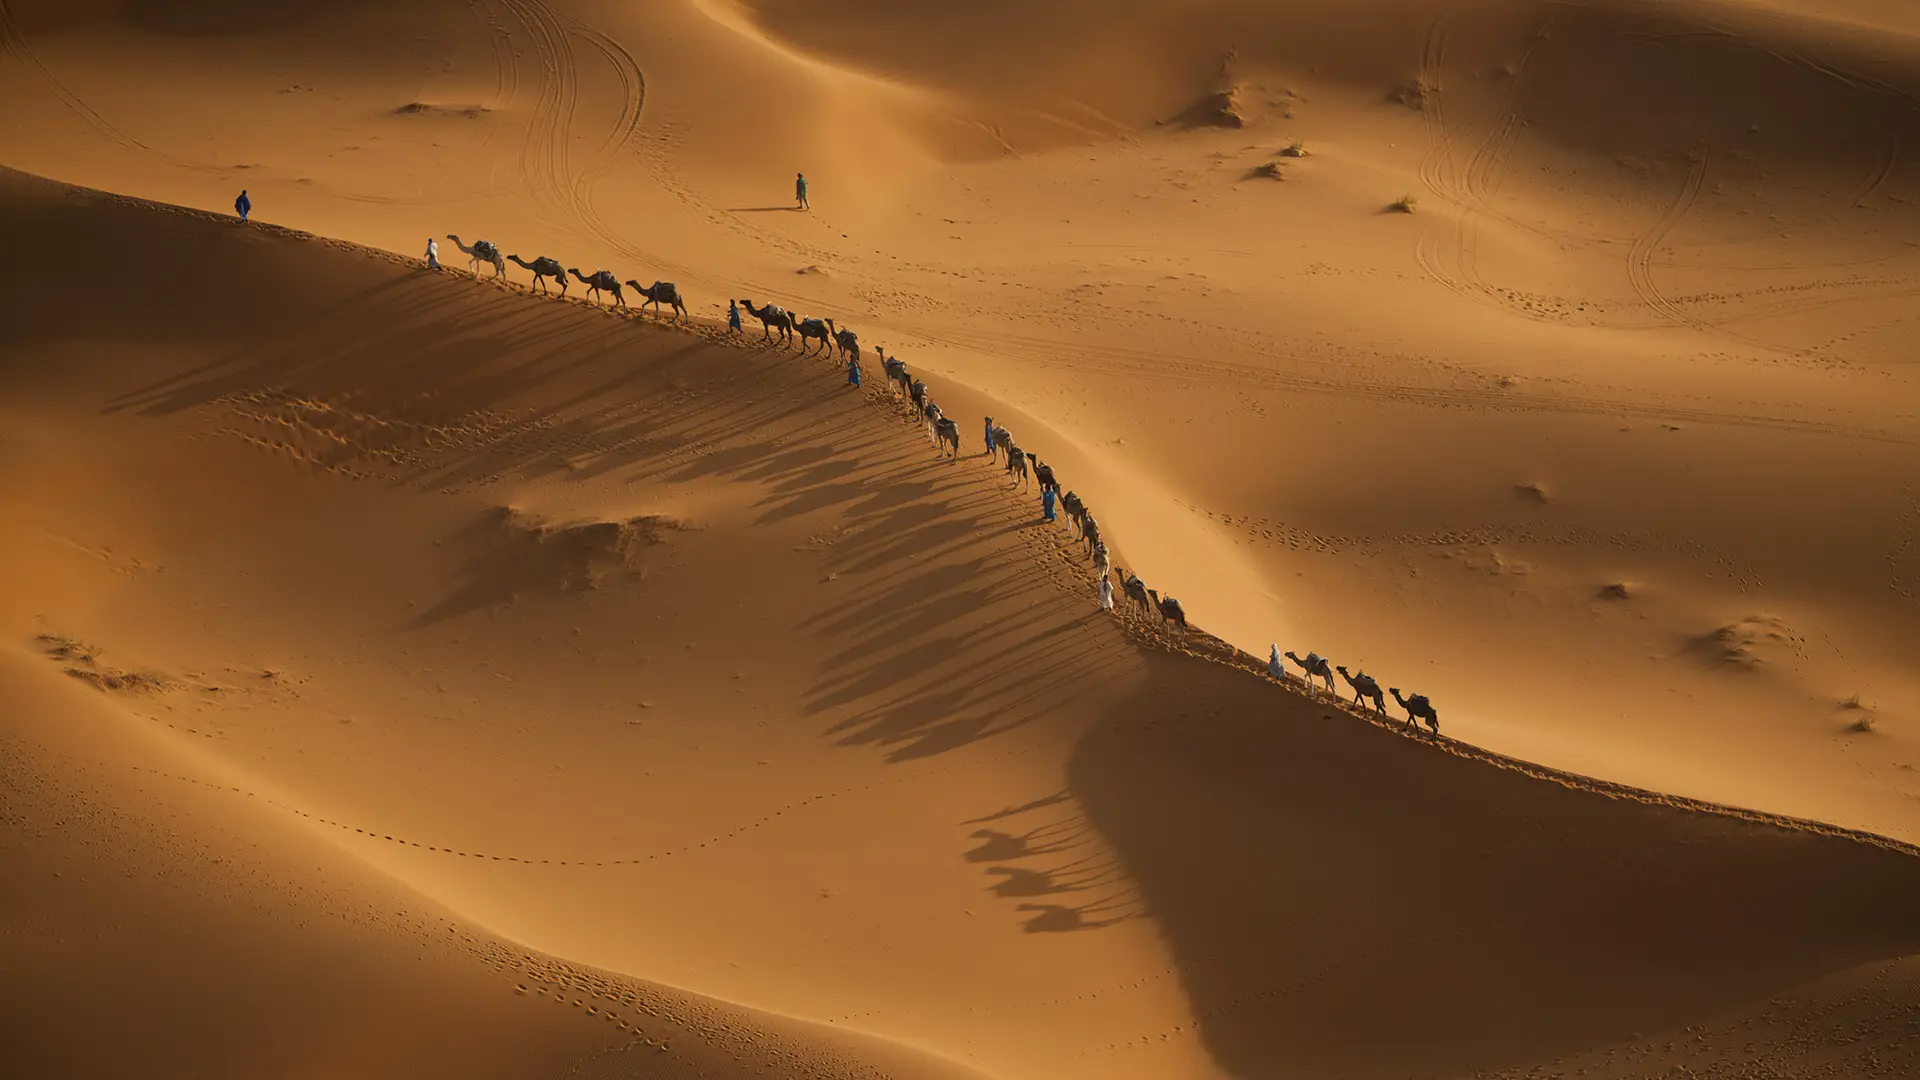 Les chameaux sont bien adaptés à la vie dans le Sahara aride.